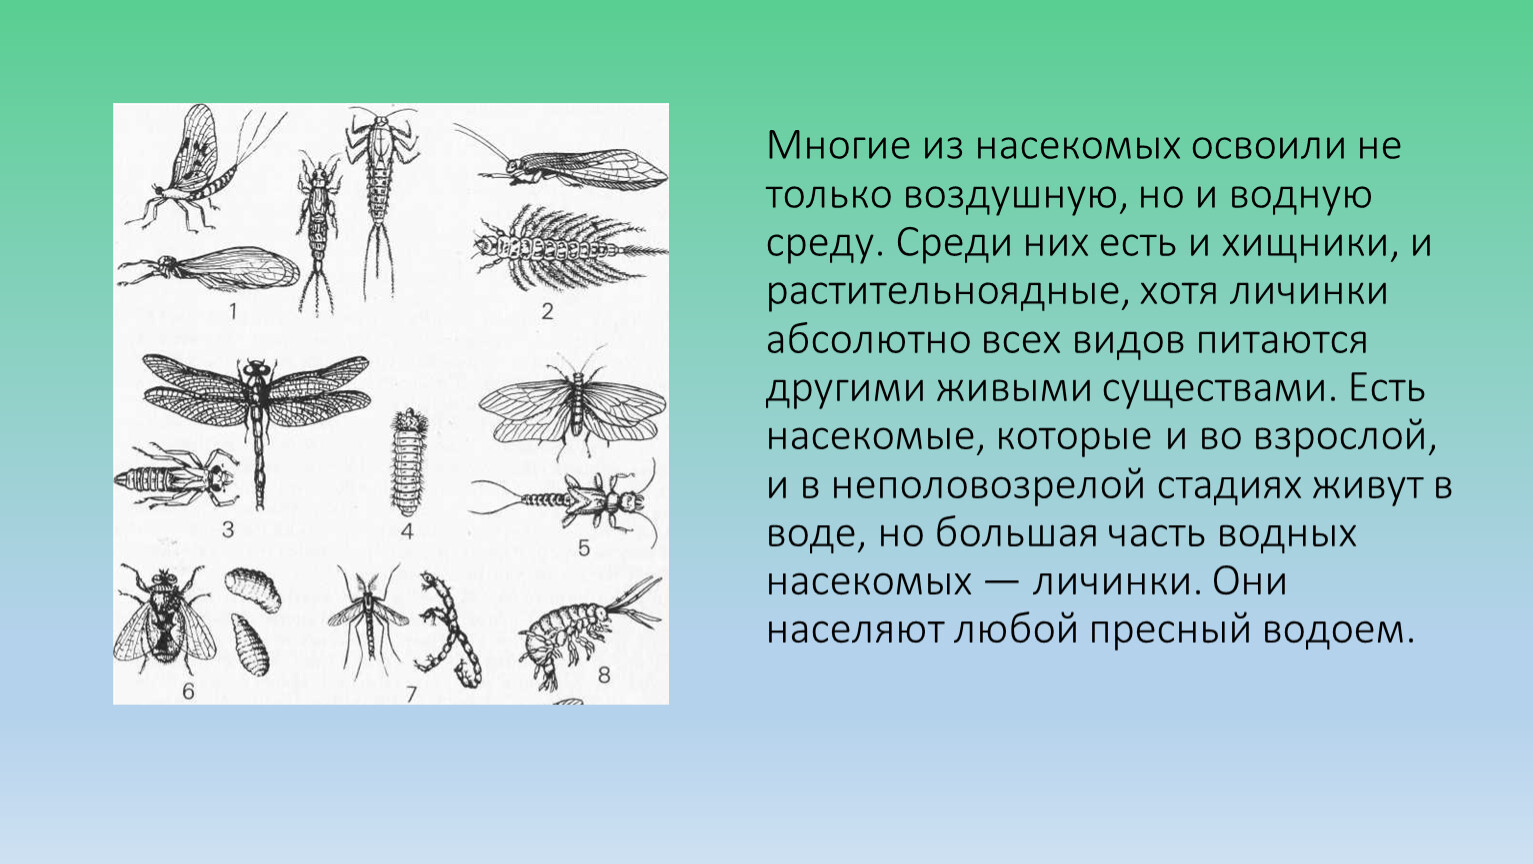 Какие среды освоили жуки. Морфология насекомых. Насекомые освоили среды. Личинка жука обитает в водной среде. Насекомые освоили все среды обитания.